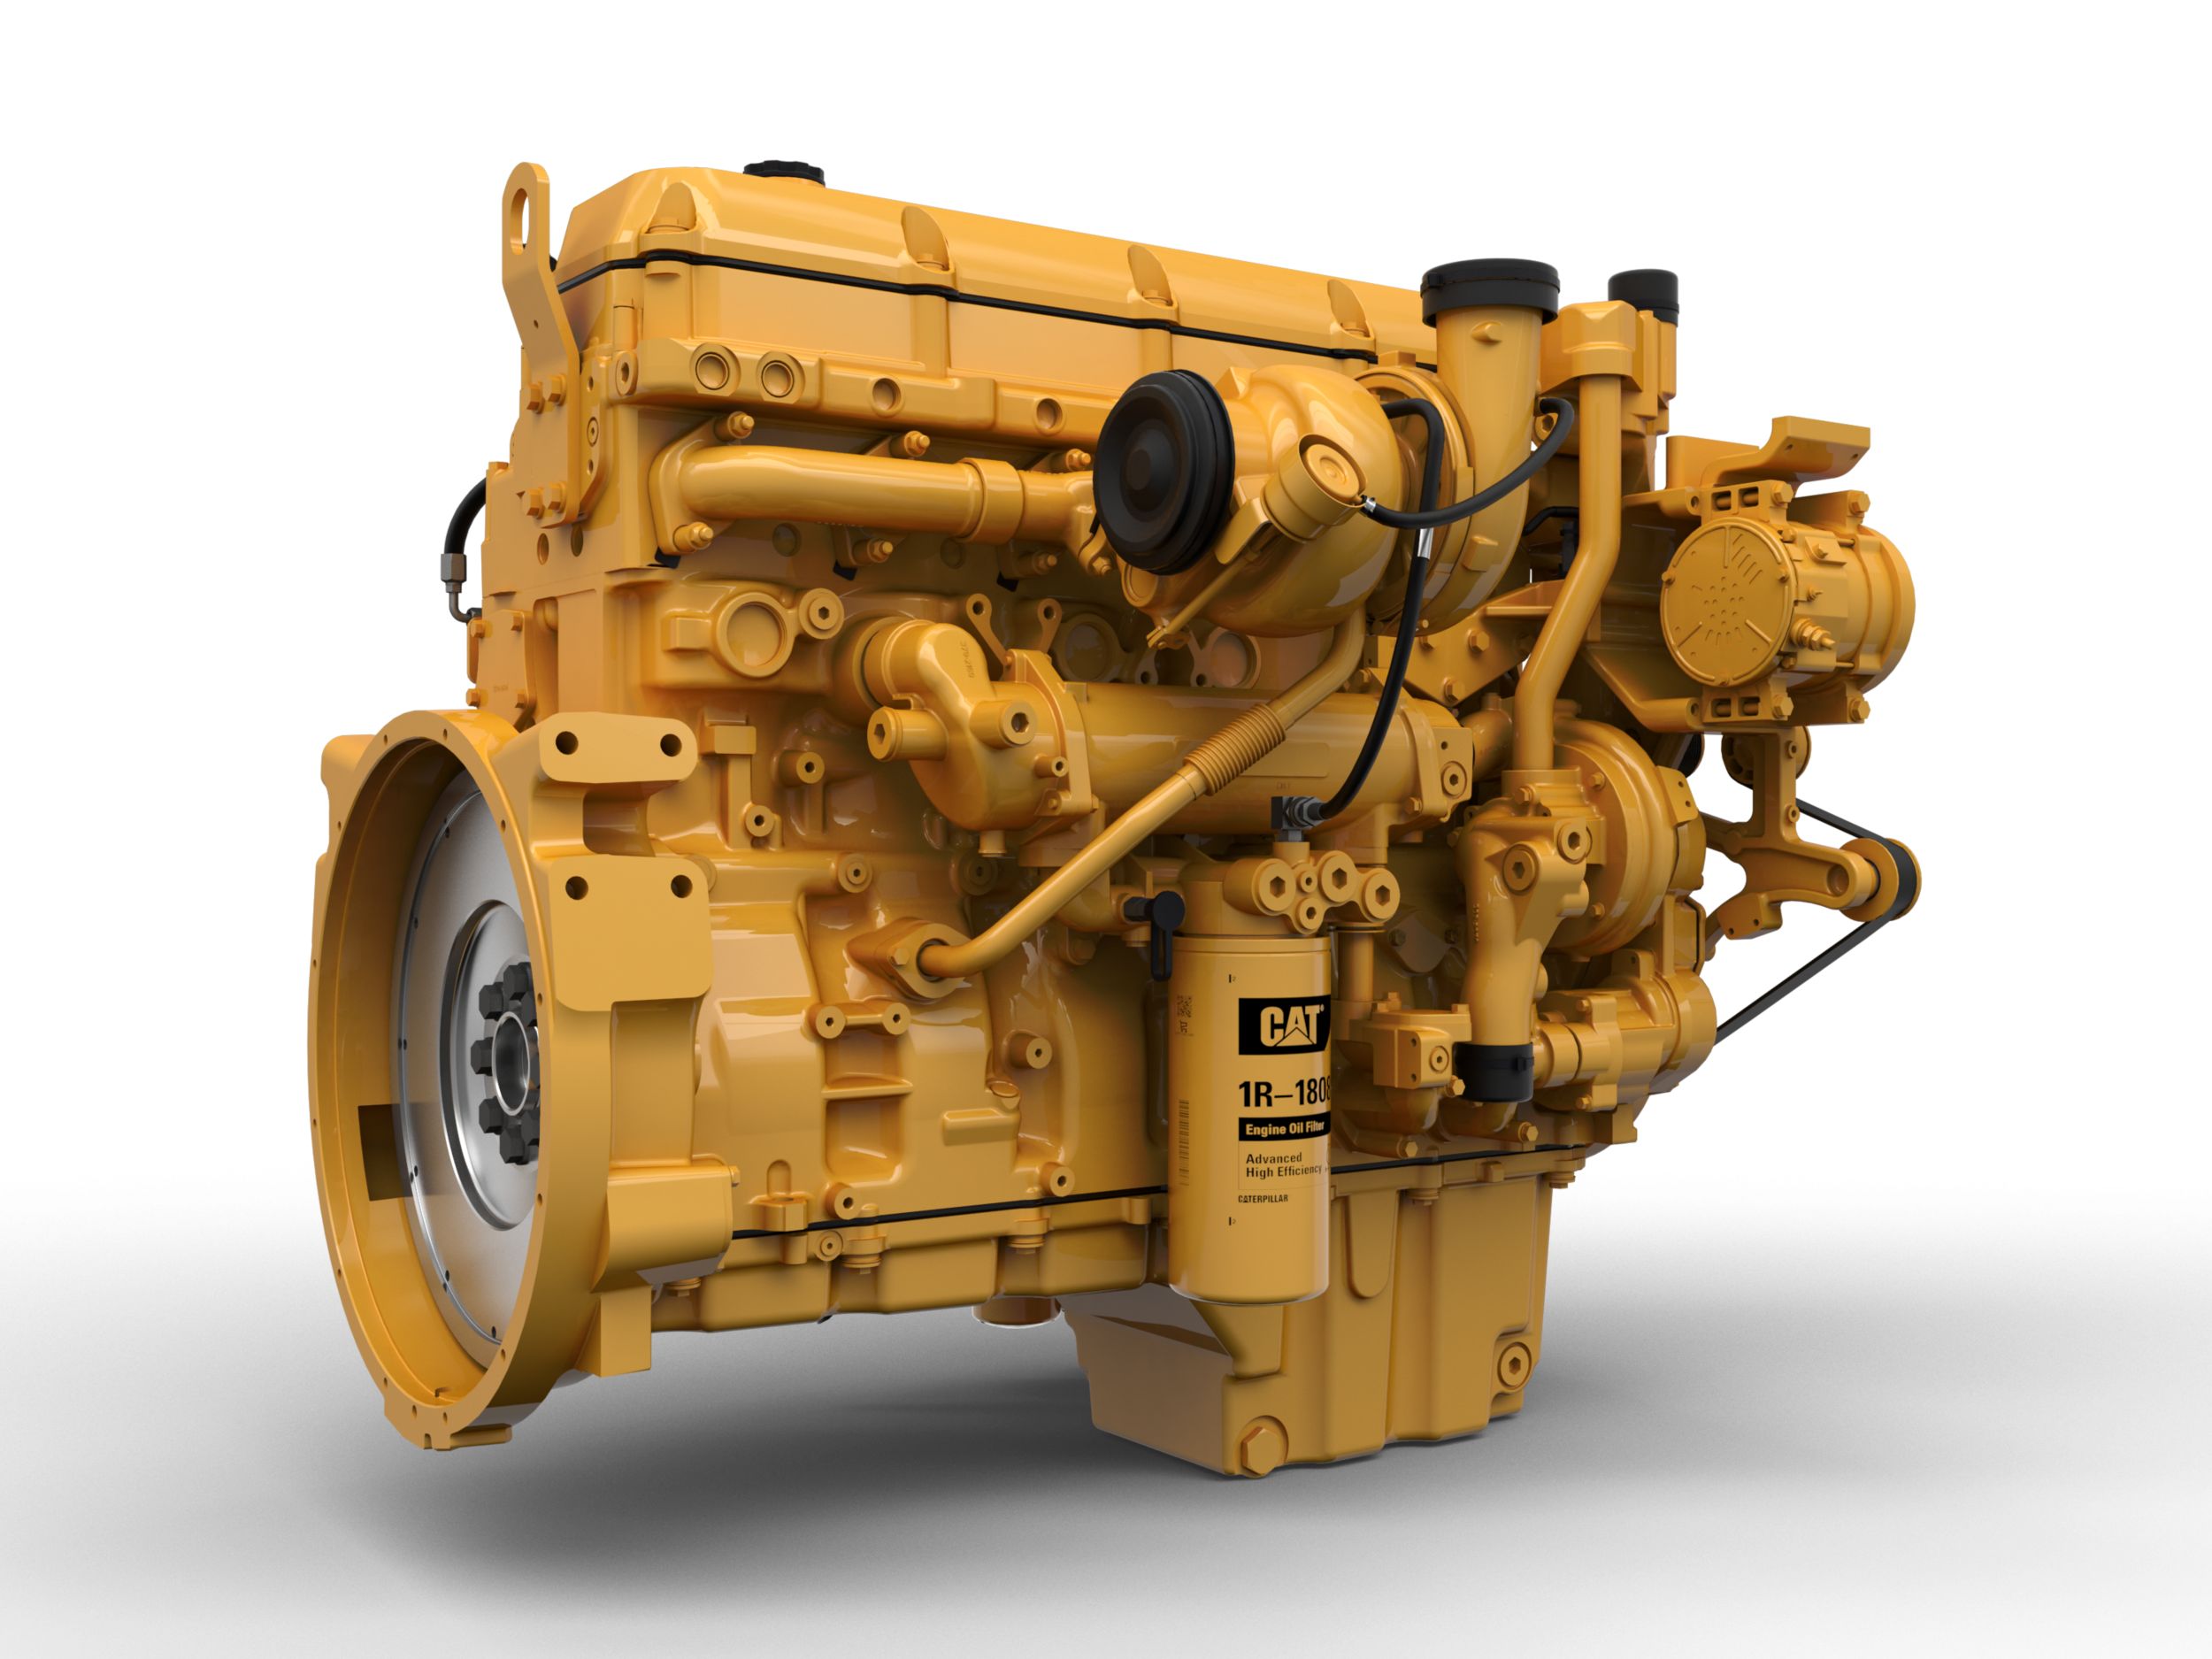 Motori diesel C13B Tier 4 - Aree altamente regolamentate